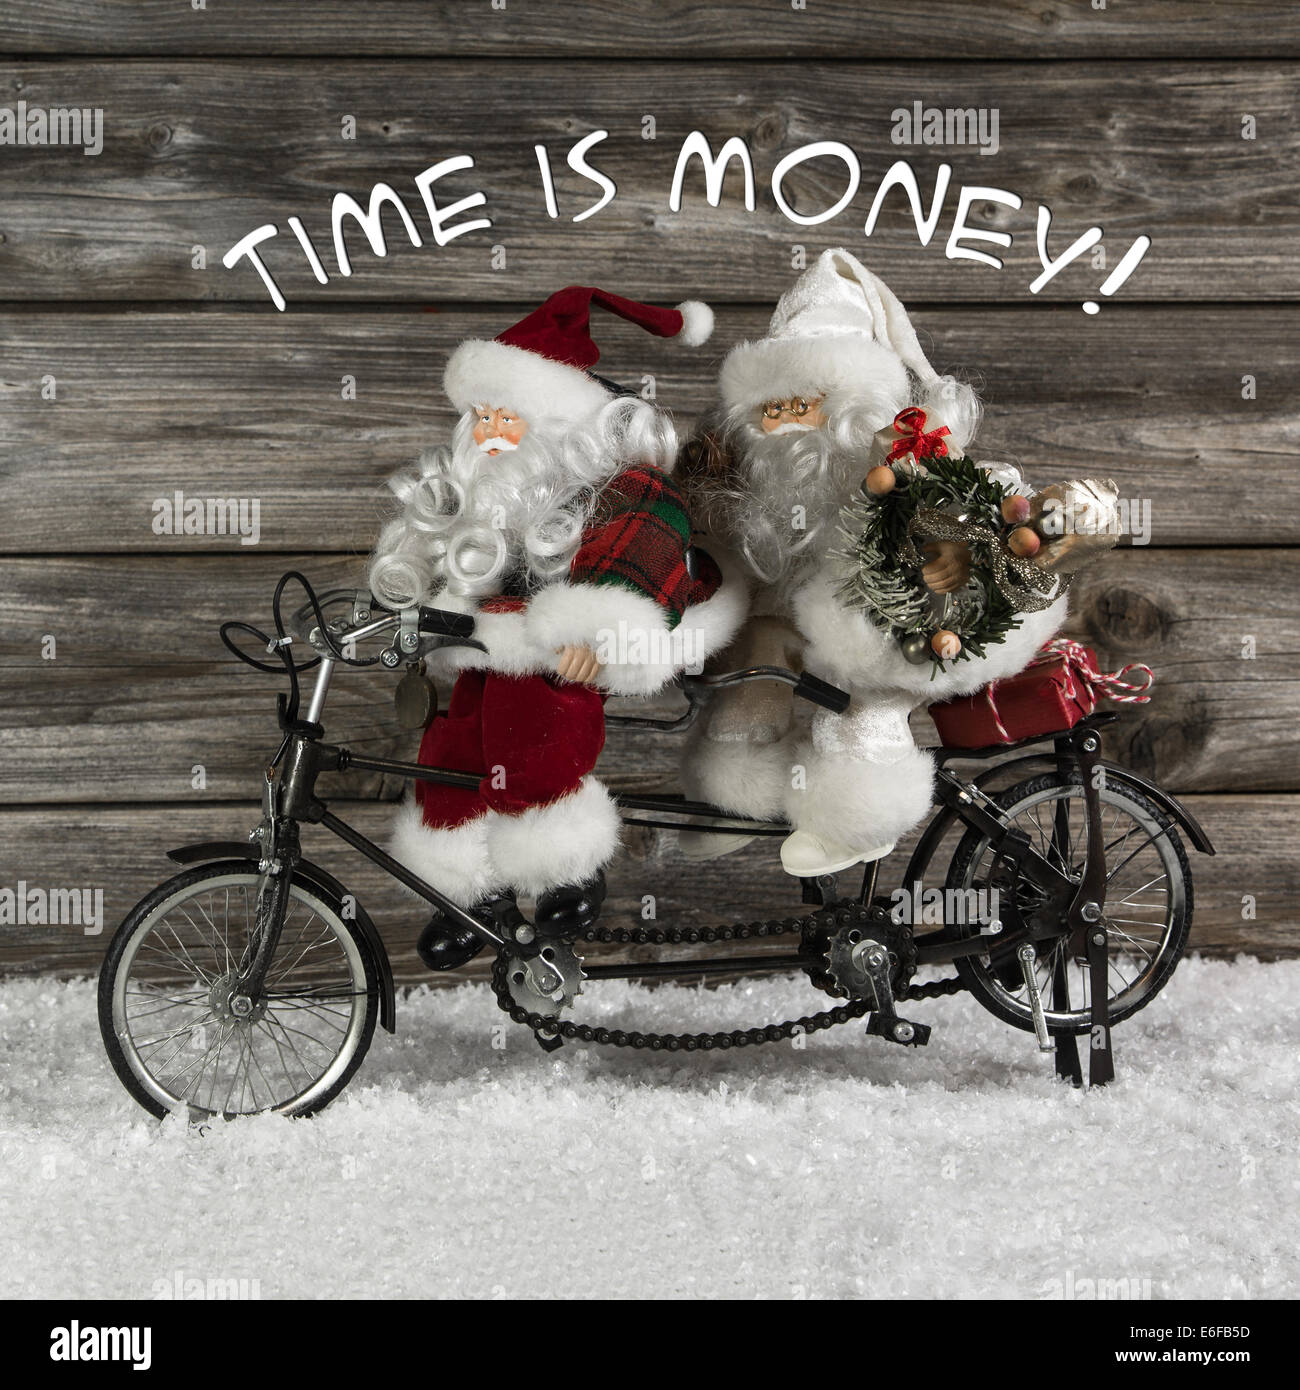 Il tempo è denaro - santa claus team in fretta per comprare i regali di Natale. Funny foto in stile vintage con un vecchio tandem di bici Foto Stock